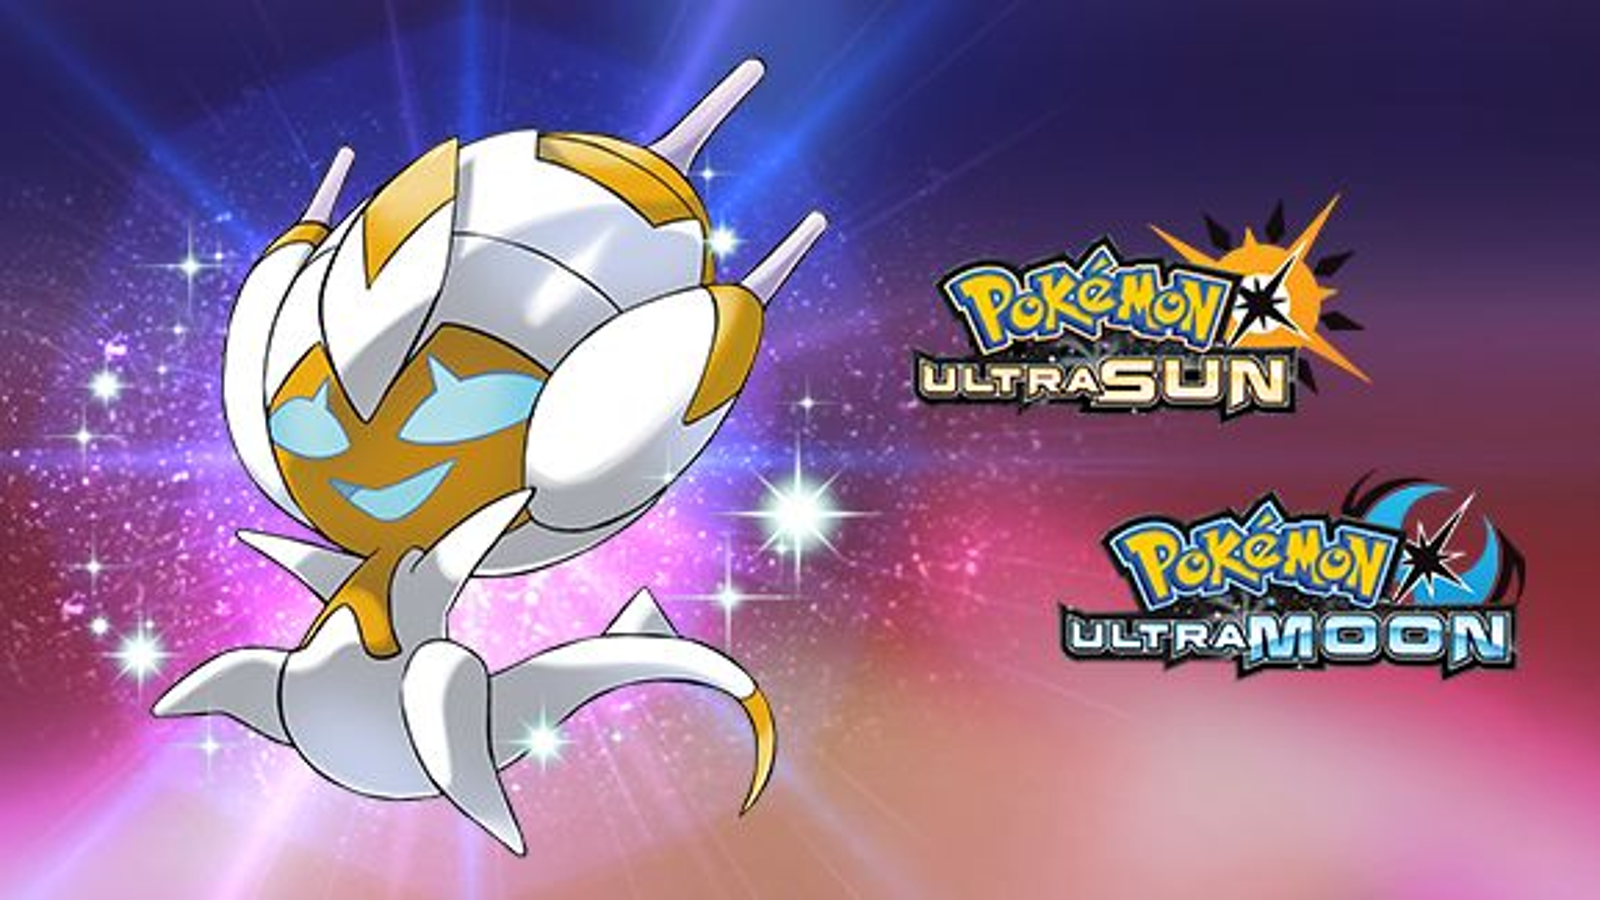 Pokémon Ultra Sun & Ultra Moon - Legendary Pokémon